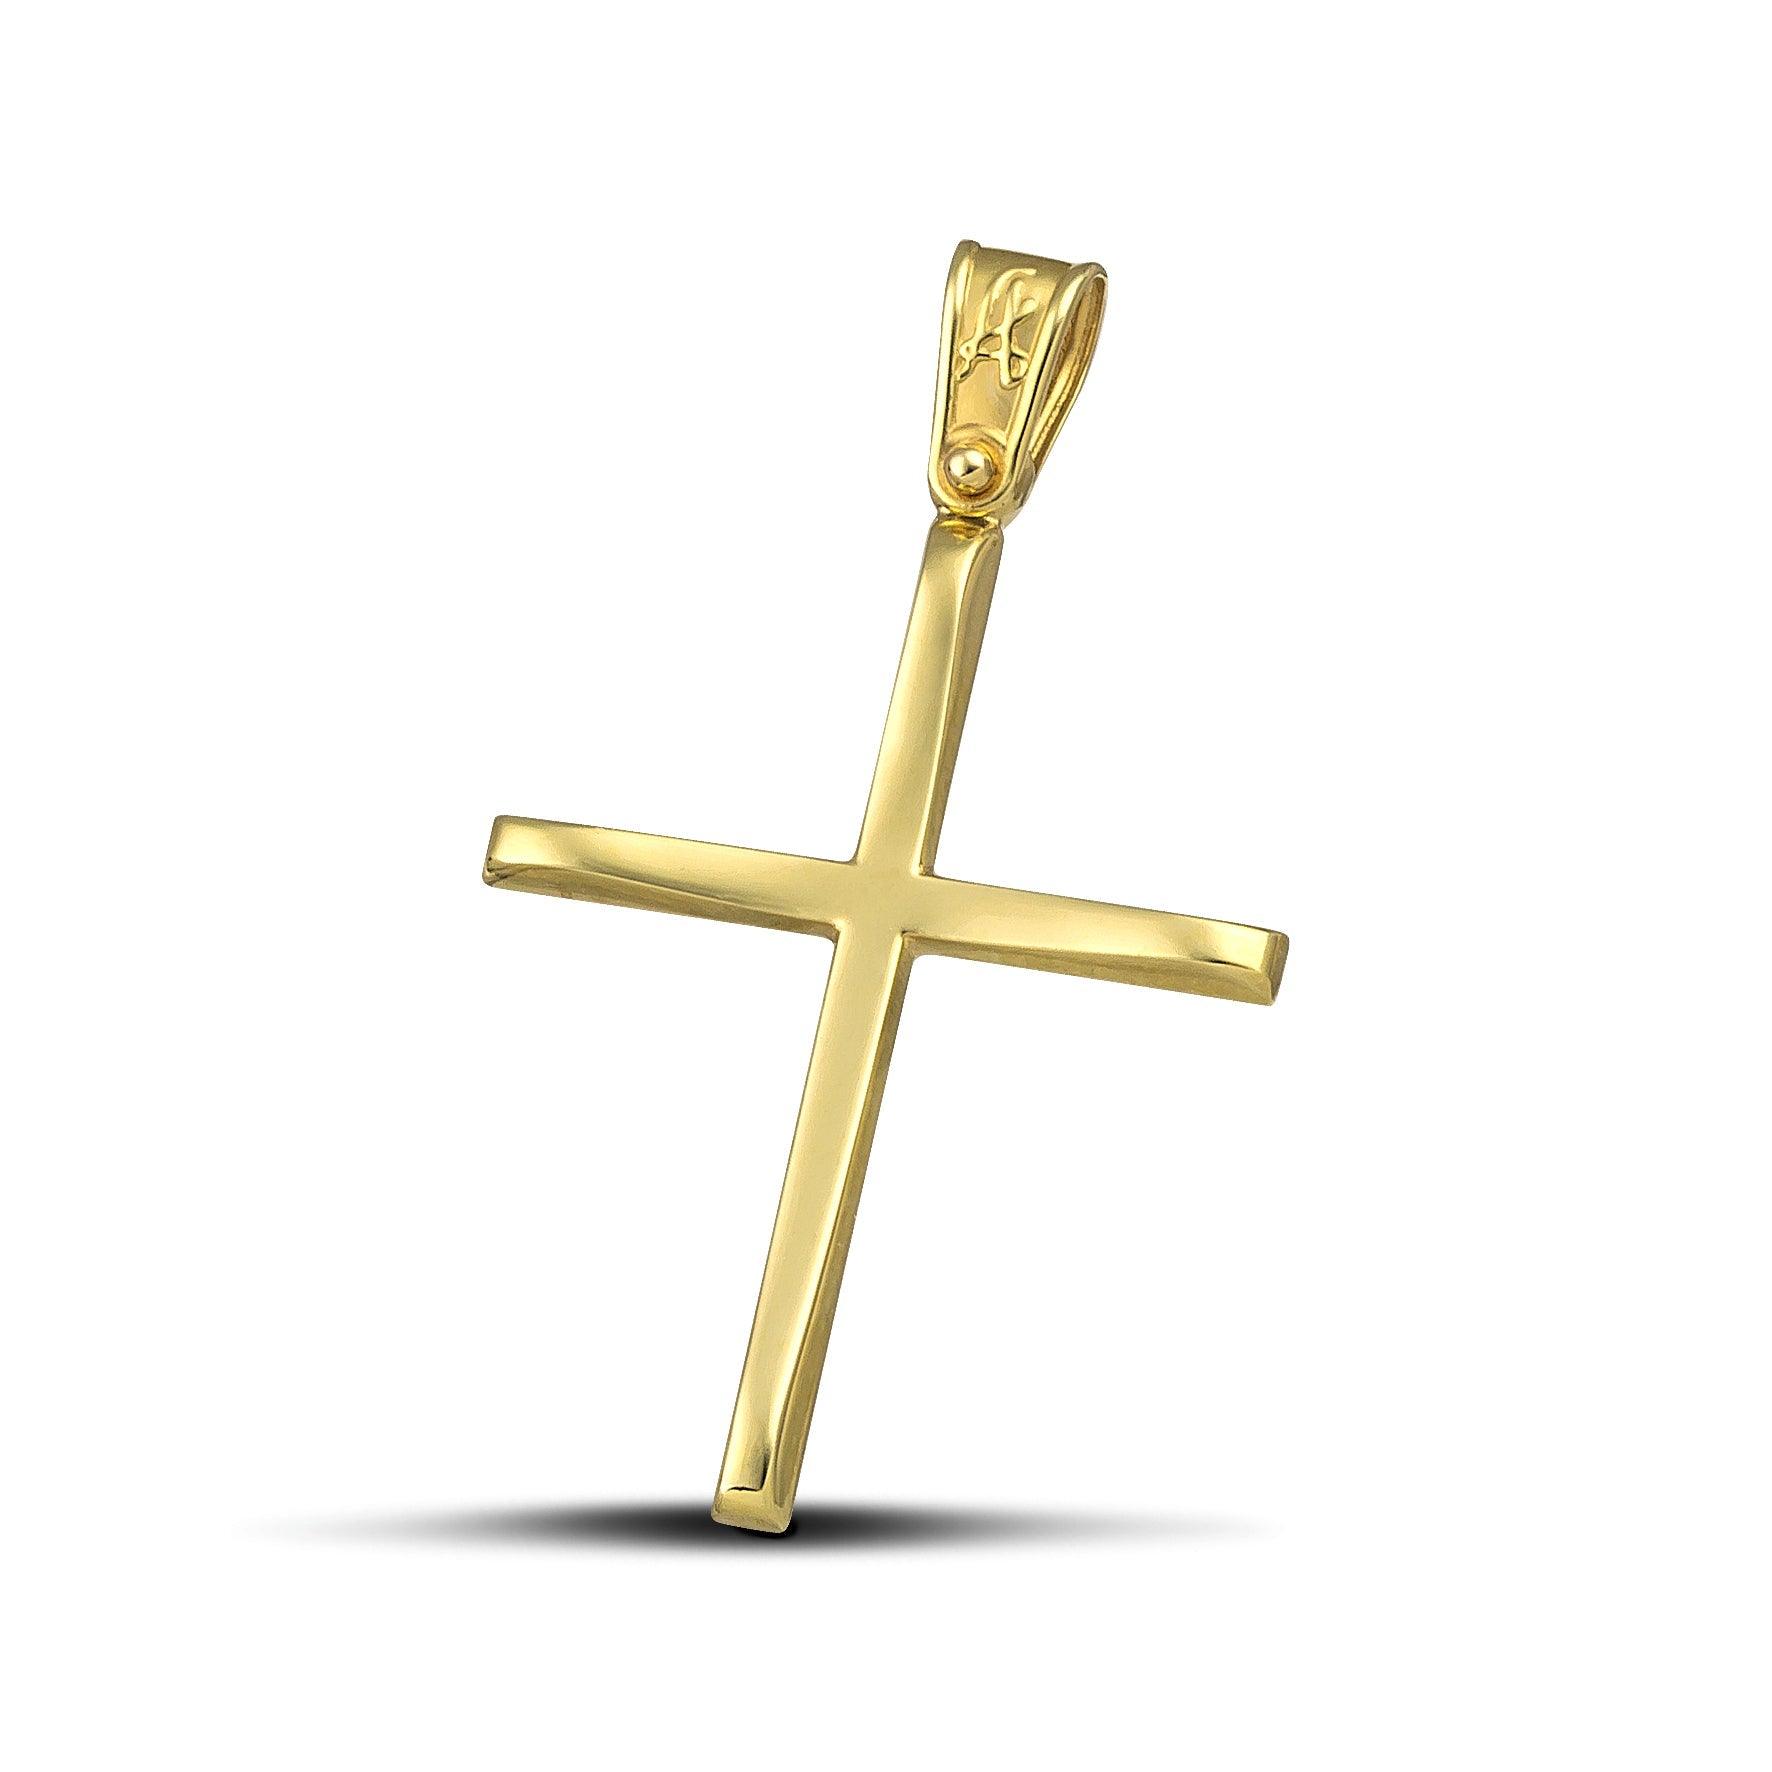 Χρυσός βαφτιστικός σταυρός Κ14, με κλασσικό σχεδιασμό. Γυναικείο χειροποίητο κόσμημα.